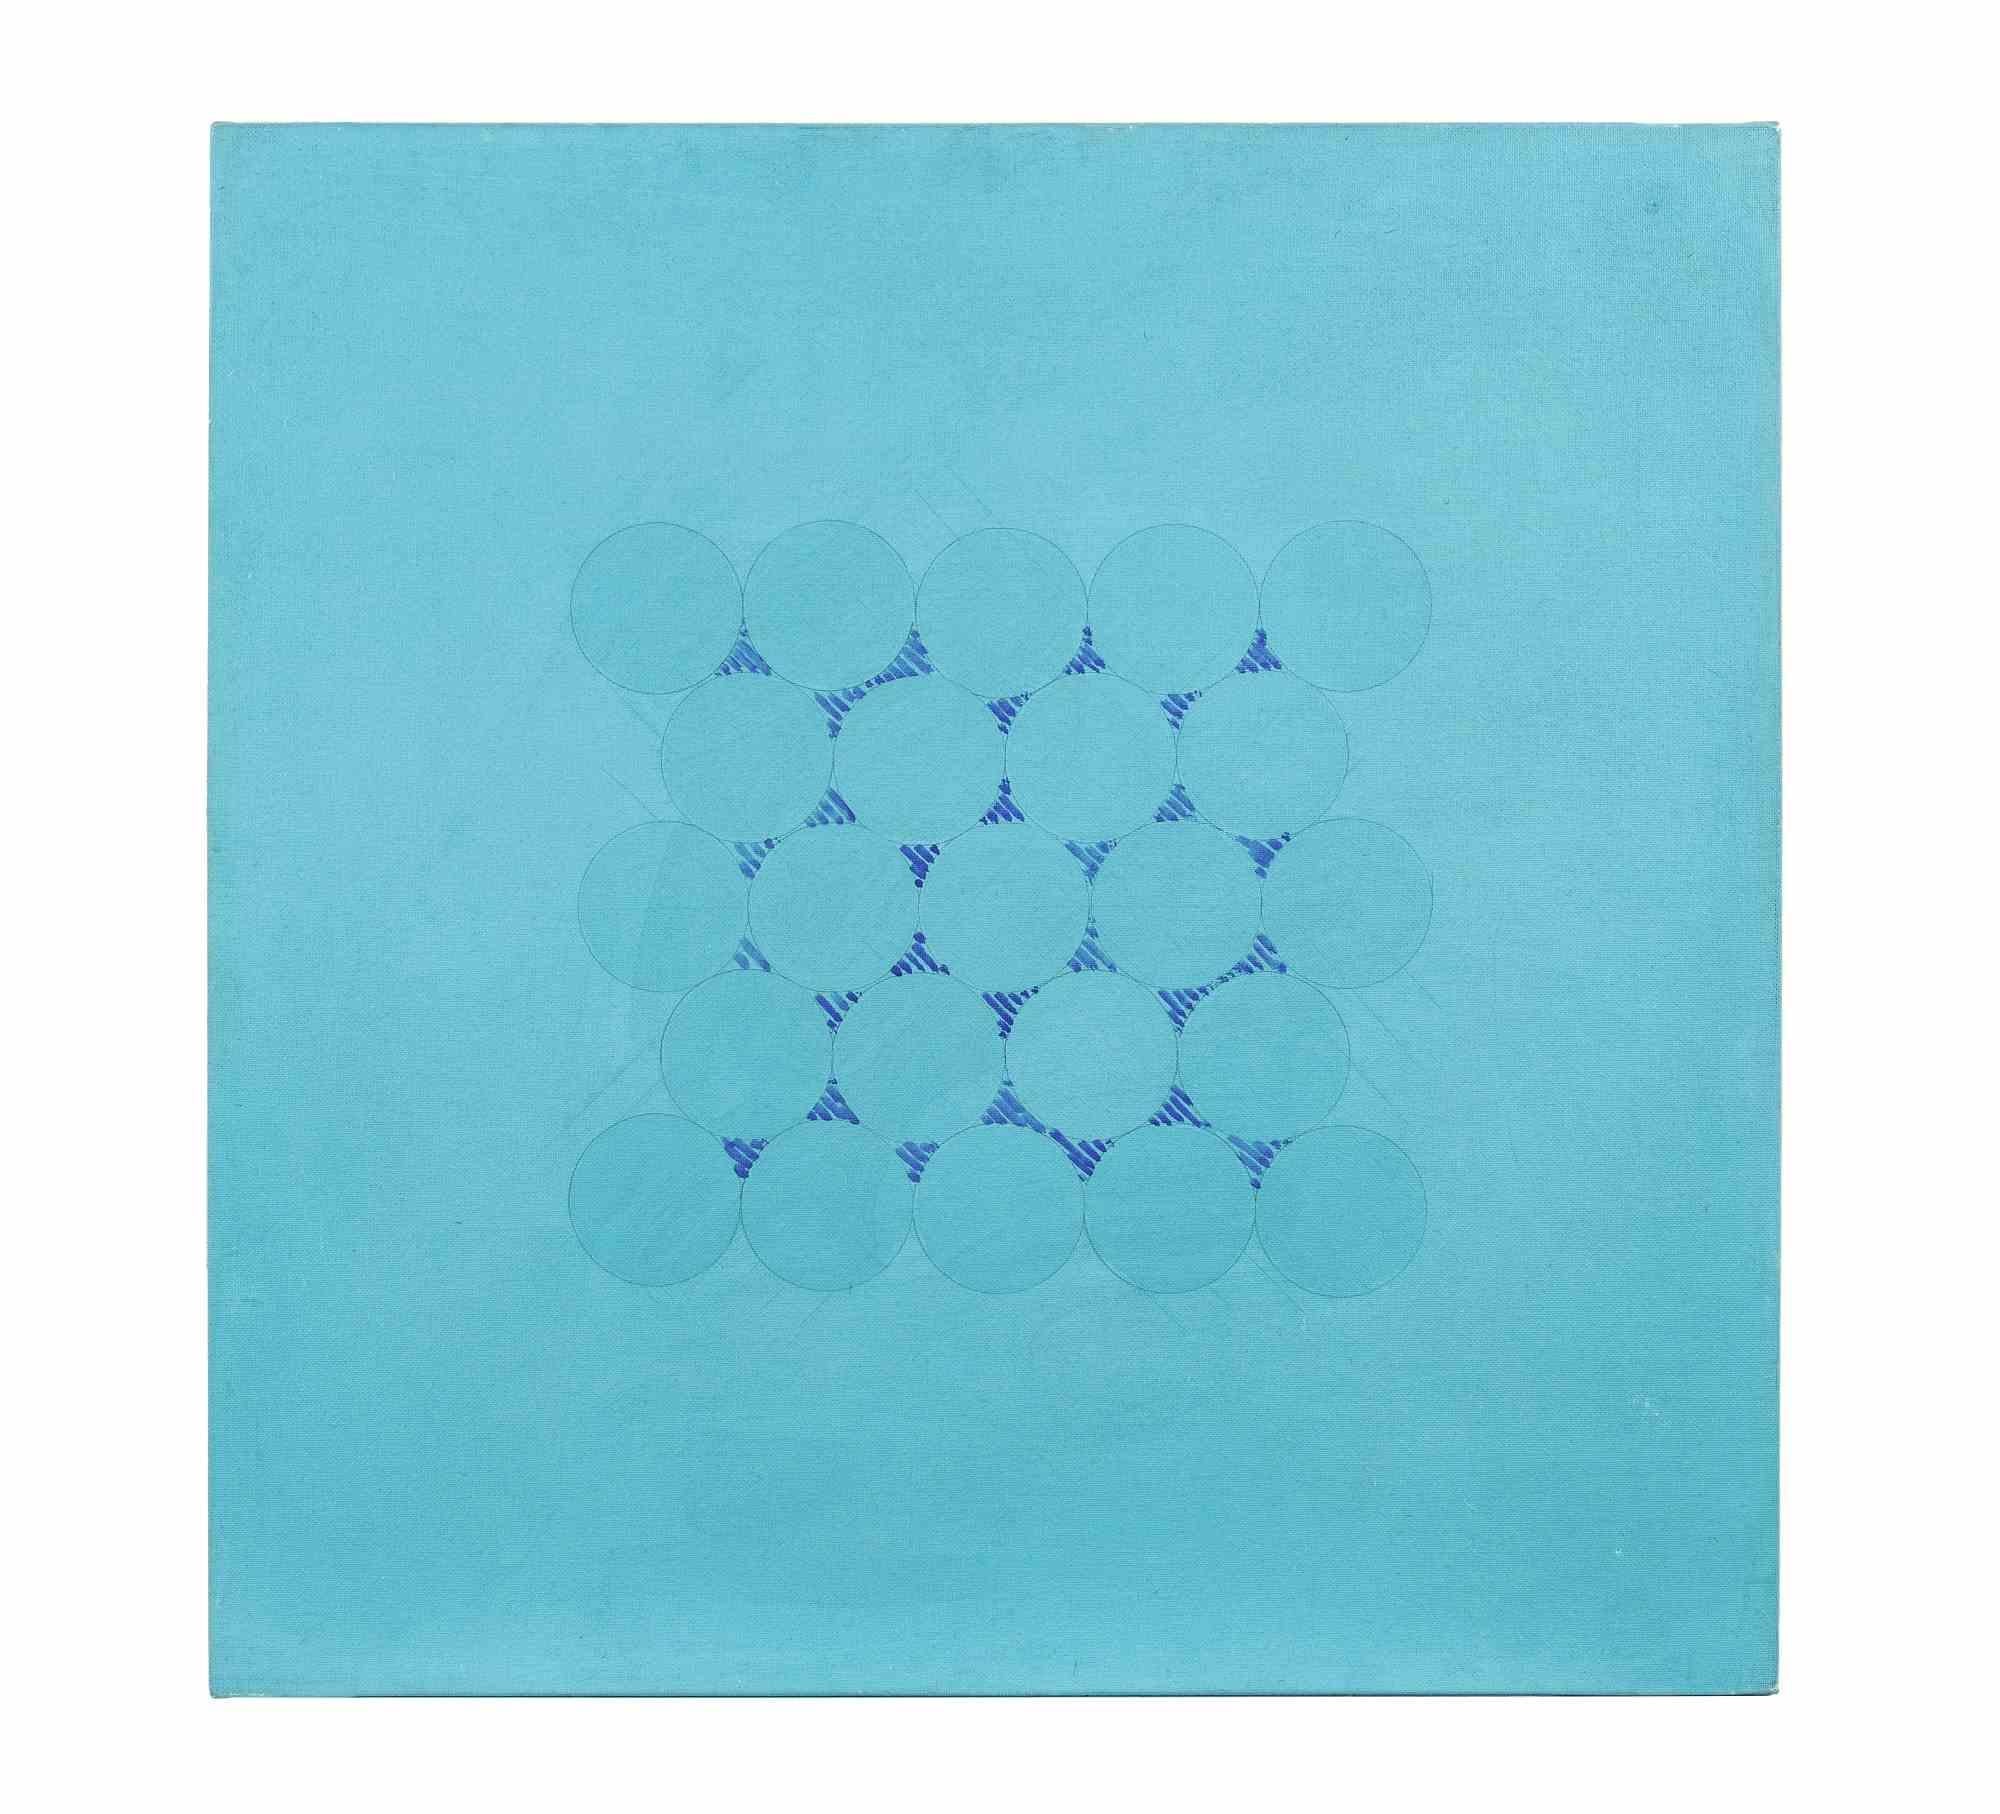 Blue n.18 ist ein originelles zeitgenössisches Kunstwerk von Gastone Biggi aus dem Jahr 1974.

Gemischte farbige Acrylmalerei auf Leinwand

Rückseitig handsigniert, betitelt und datiert

Originaltitel: "Azzurro n. 18". 